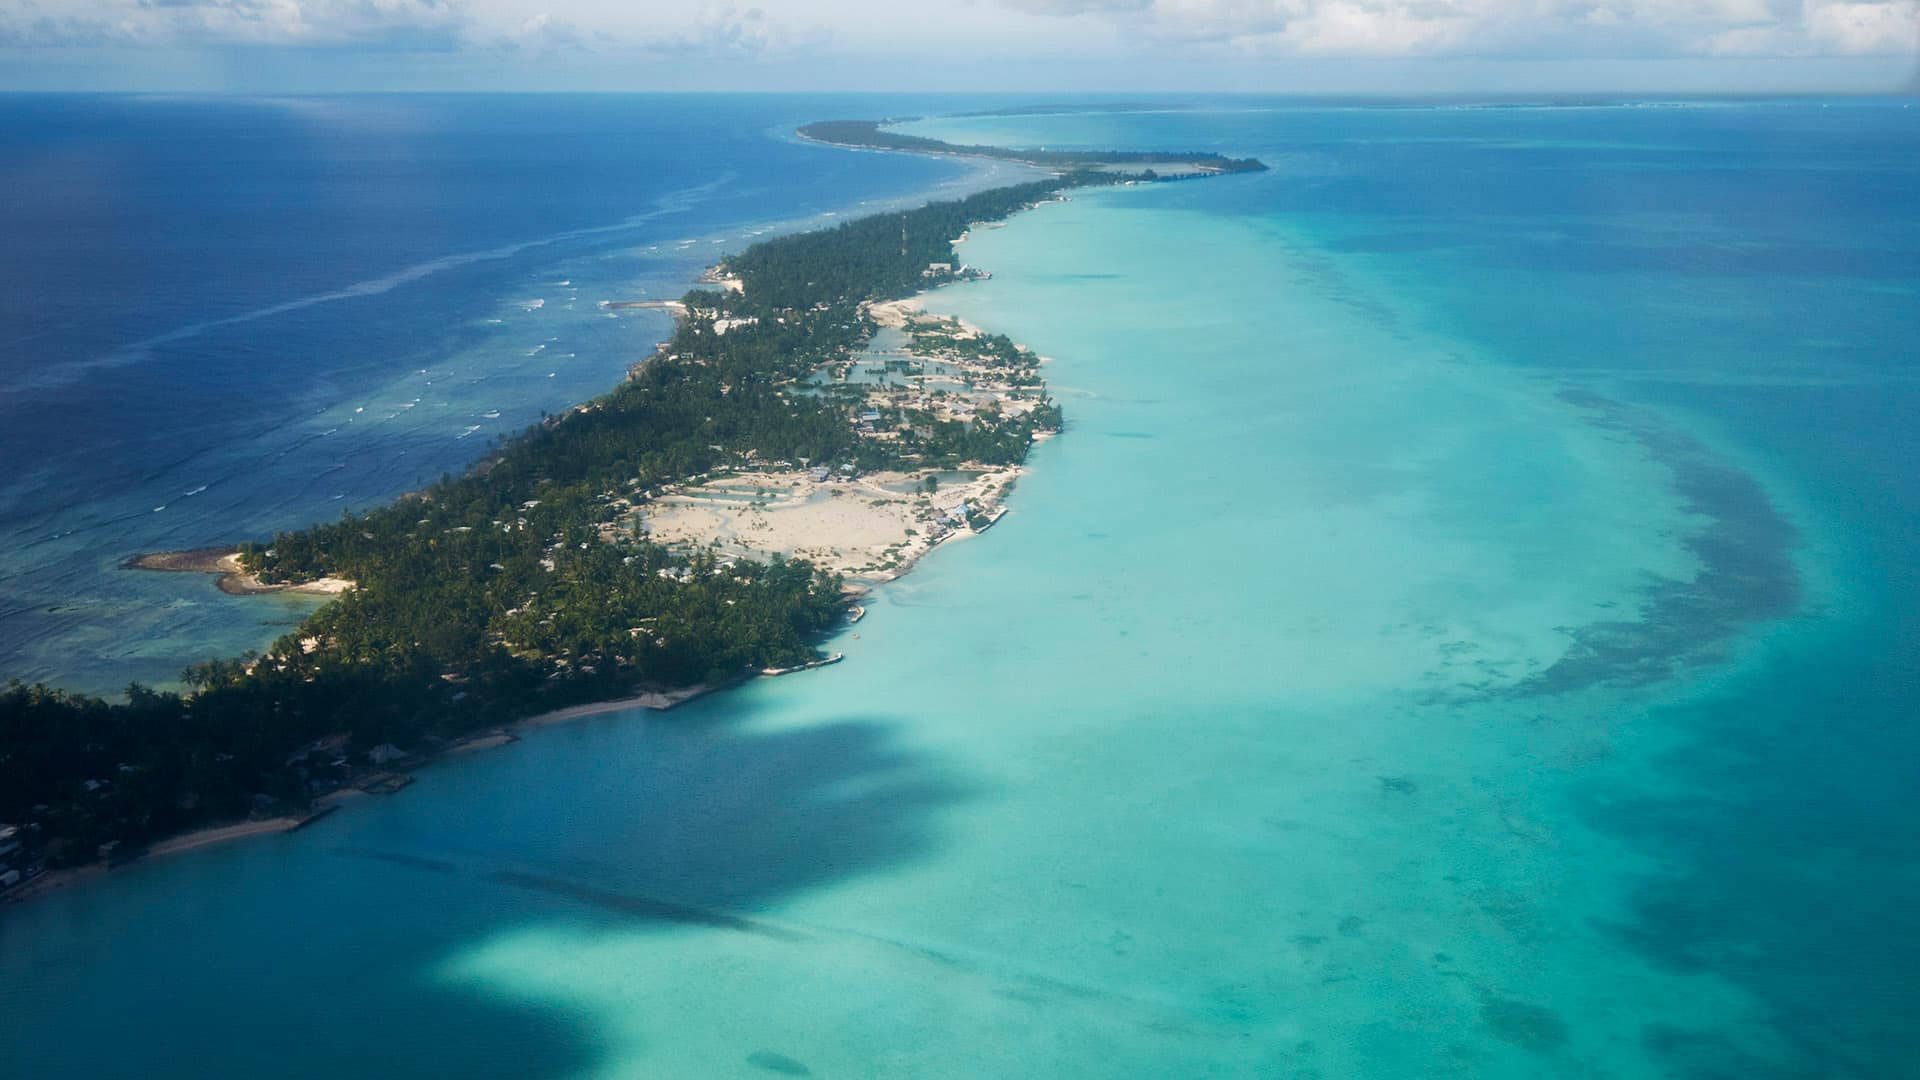 Jagtror Att Du Menar En Bakgrundsbild För Dator Eller Mobiltelefon Och Inte Kiribati Som En Önation. Men Om Du Letar Efter En Bakgrundsbild Med Motiv Från Kiribati Så Kan Det Finnas Många Alternativ På Nätet. Vilken Typ Av Motiv Letar Du Efter? Wallpaper